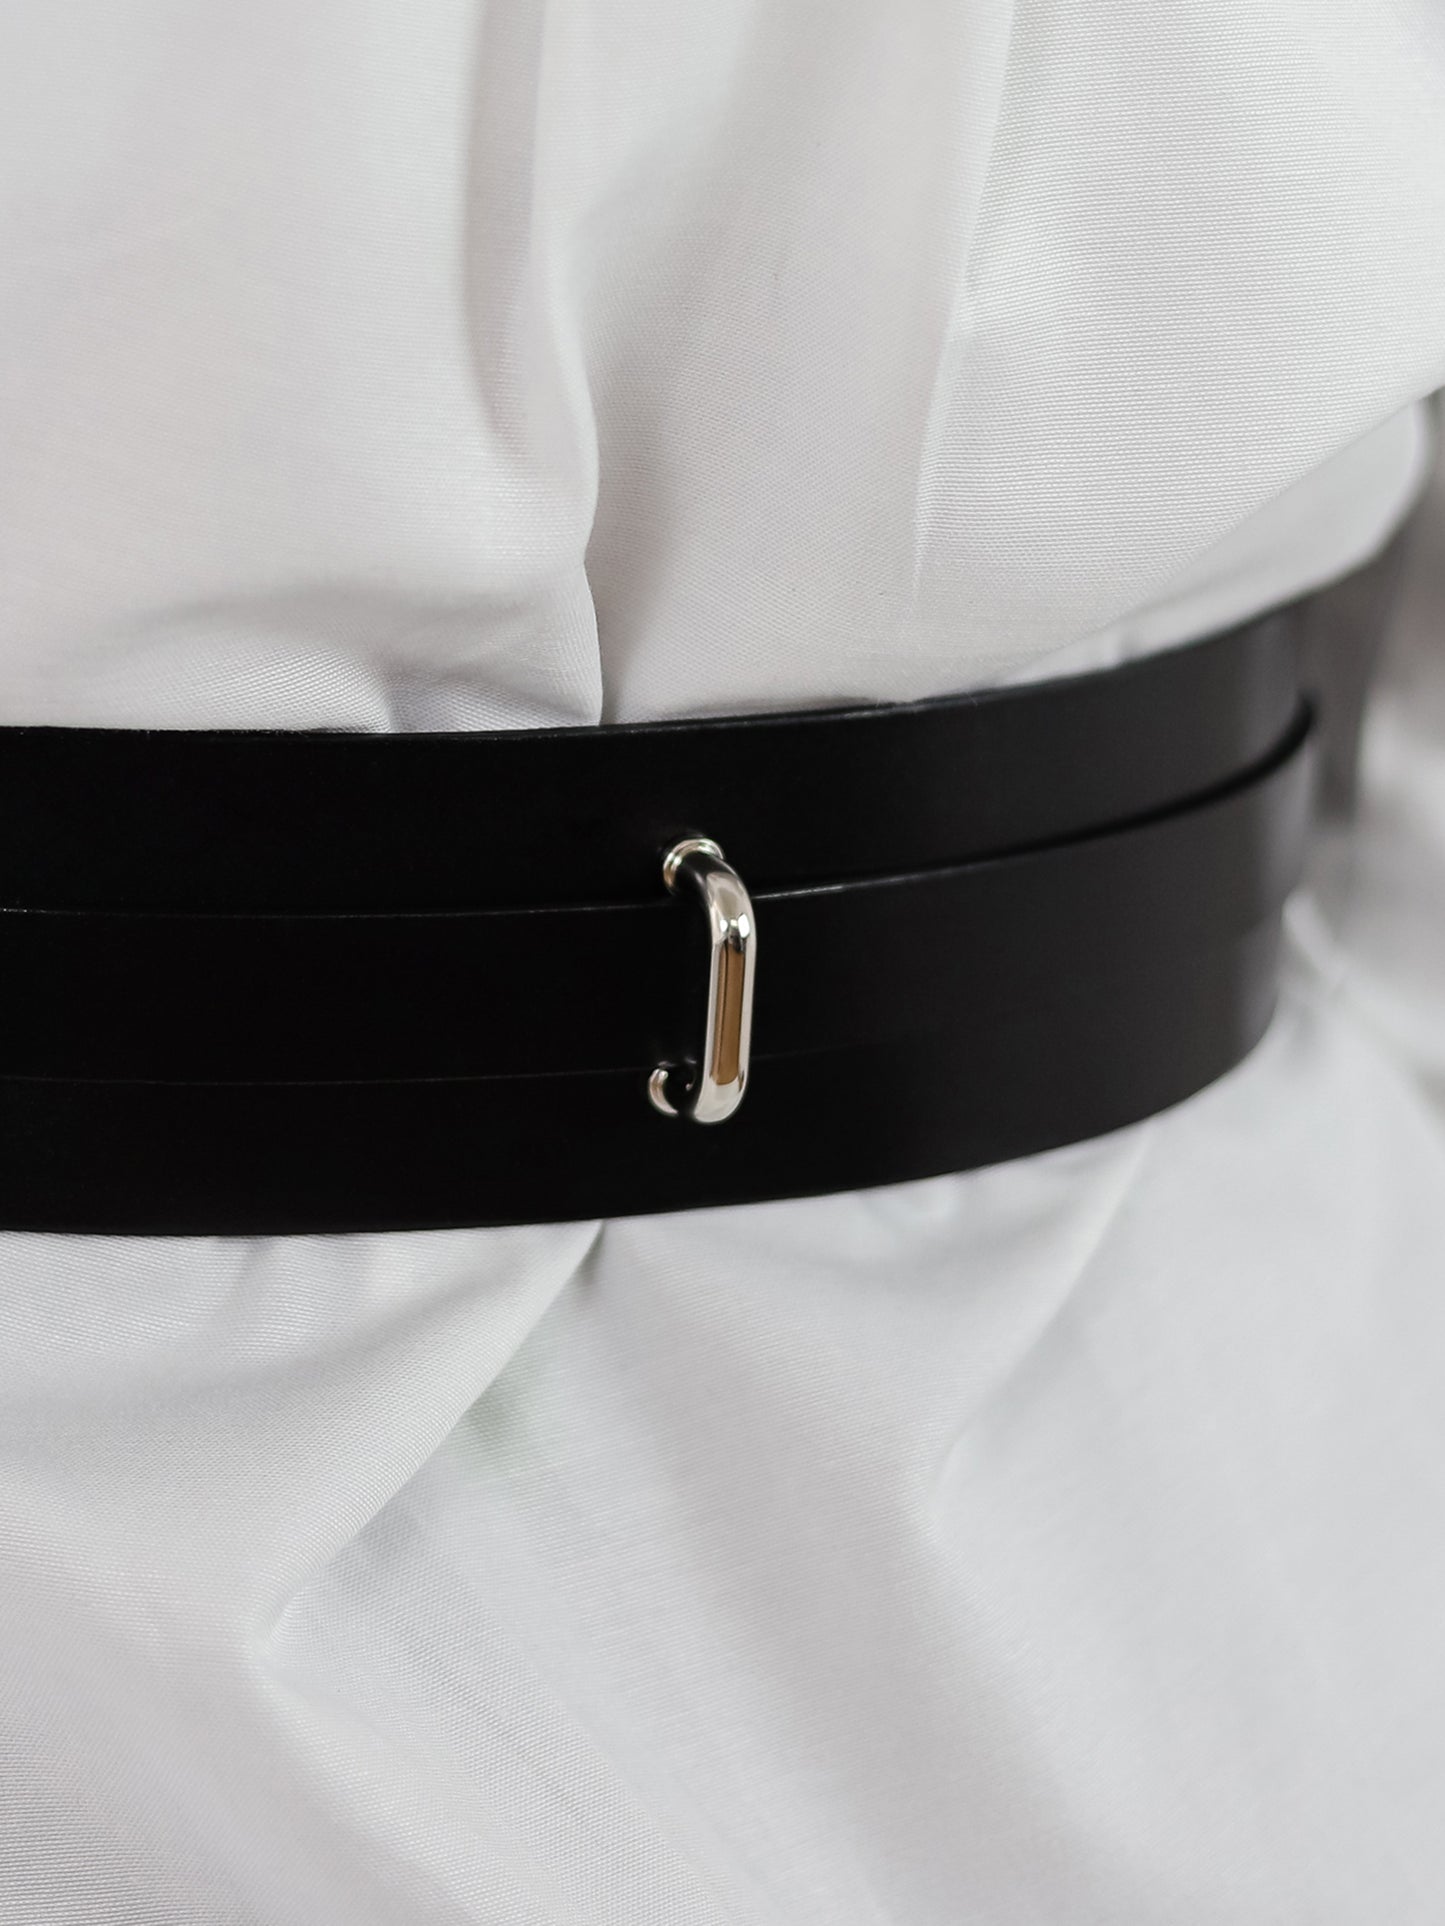 Back details of black leather belt.